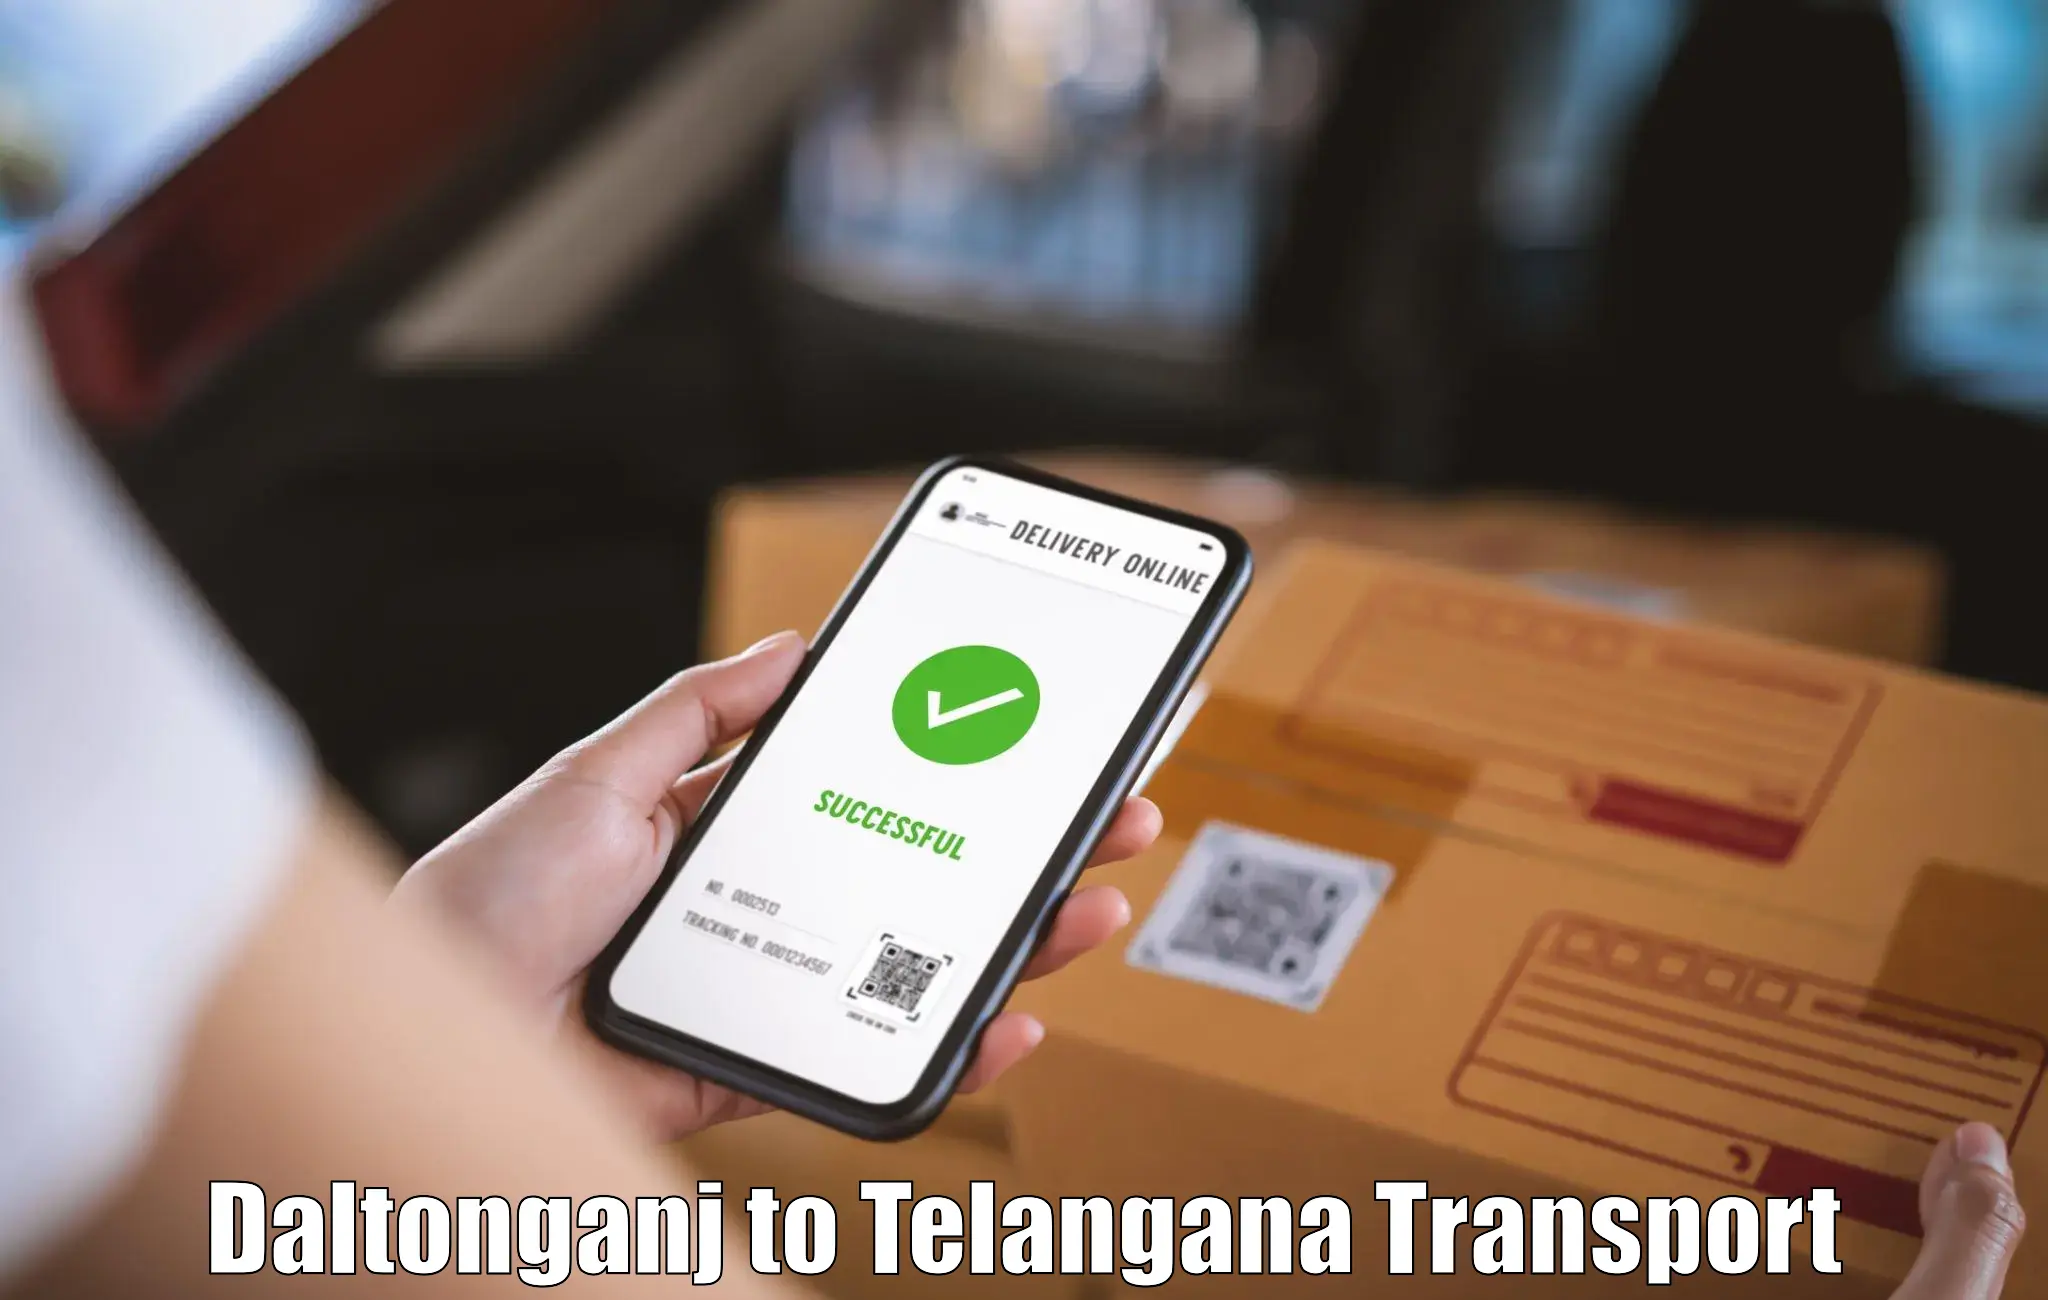 Pick up transport service Daltonganj to Warangal